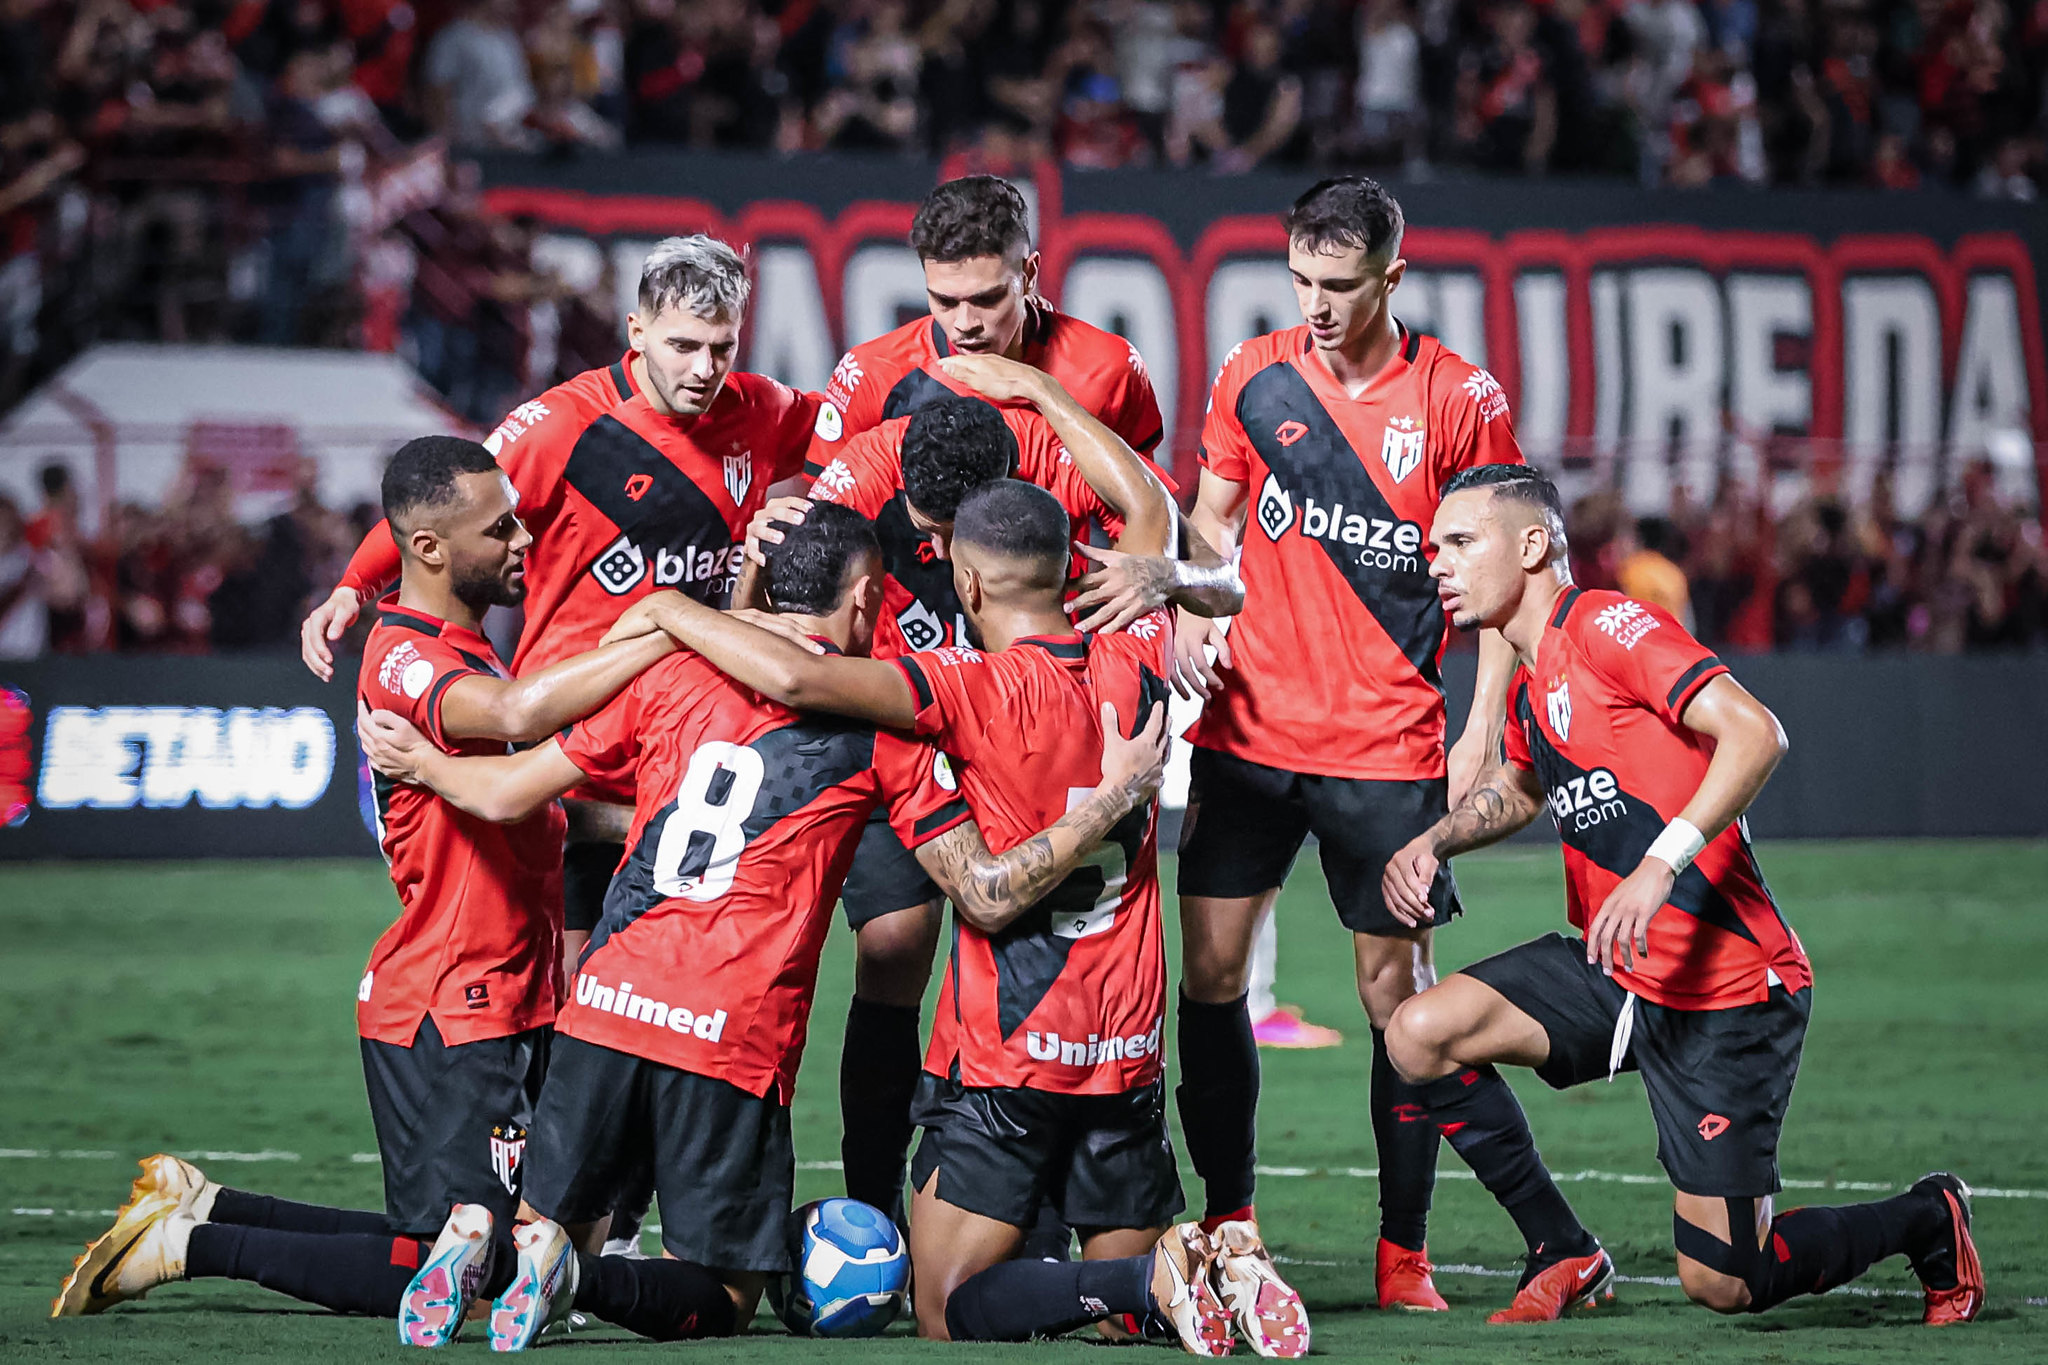 Atlético-GO superou Ituano e conquistou terceira vitória seguida na Série B (Ingryd Oliveira/Atlético-GO)